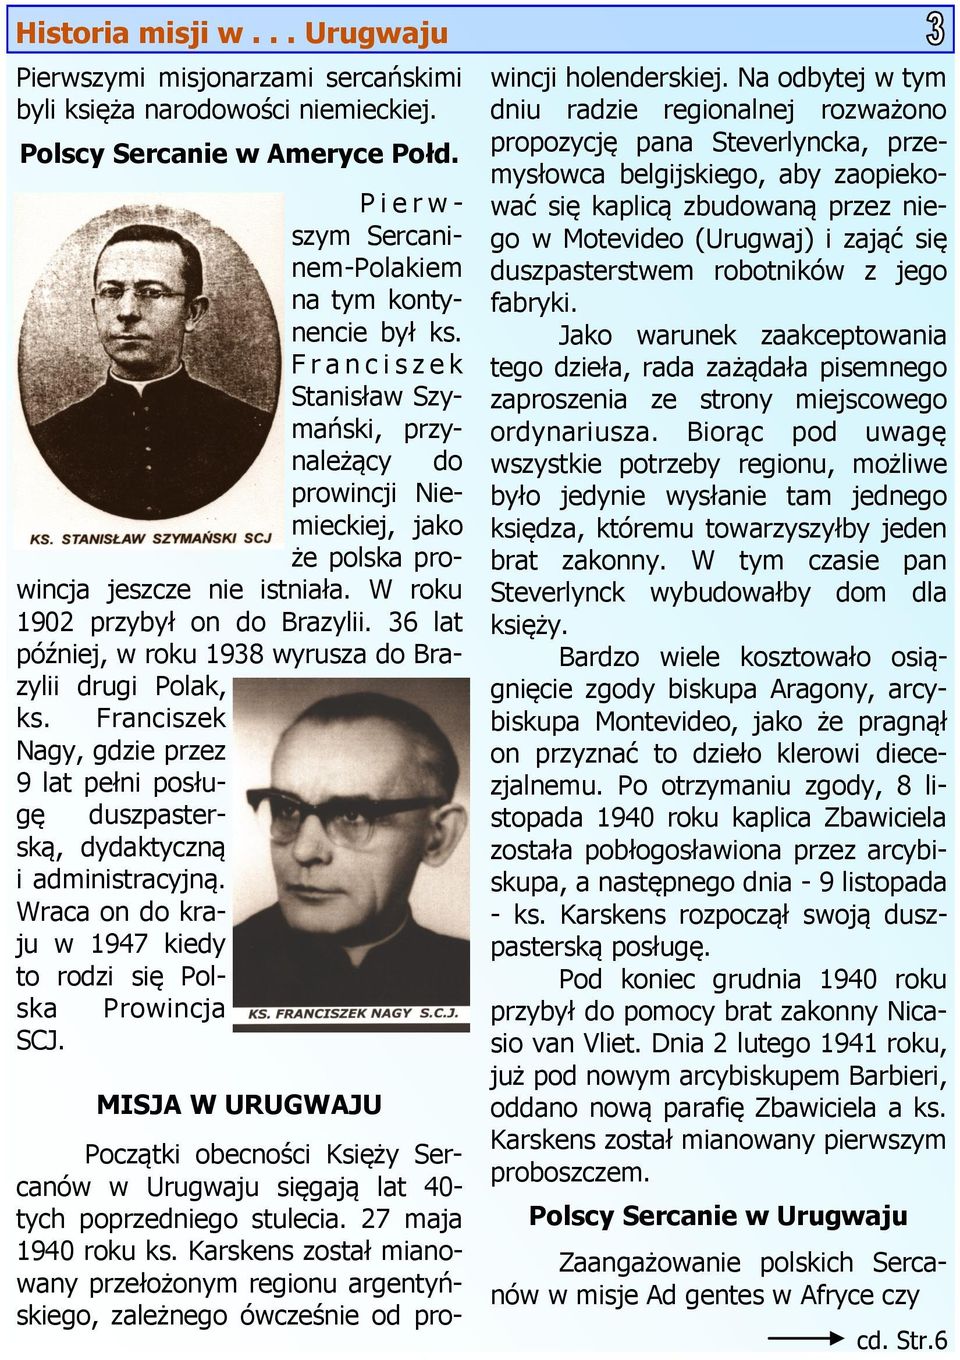 36 lat później, w roku 1938 wyrusza do Brazylii drugi Polak, ks. Franciszek Nagy, gdzie przez 9 lat pełni posługę duszpasterską, dydaktyczną i administracyjną.